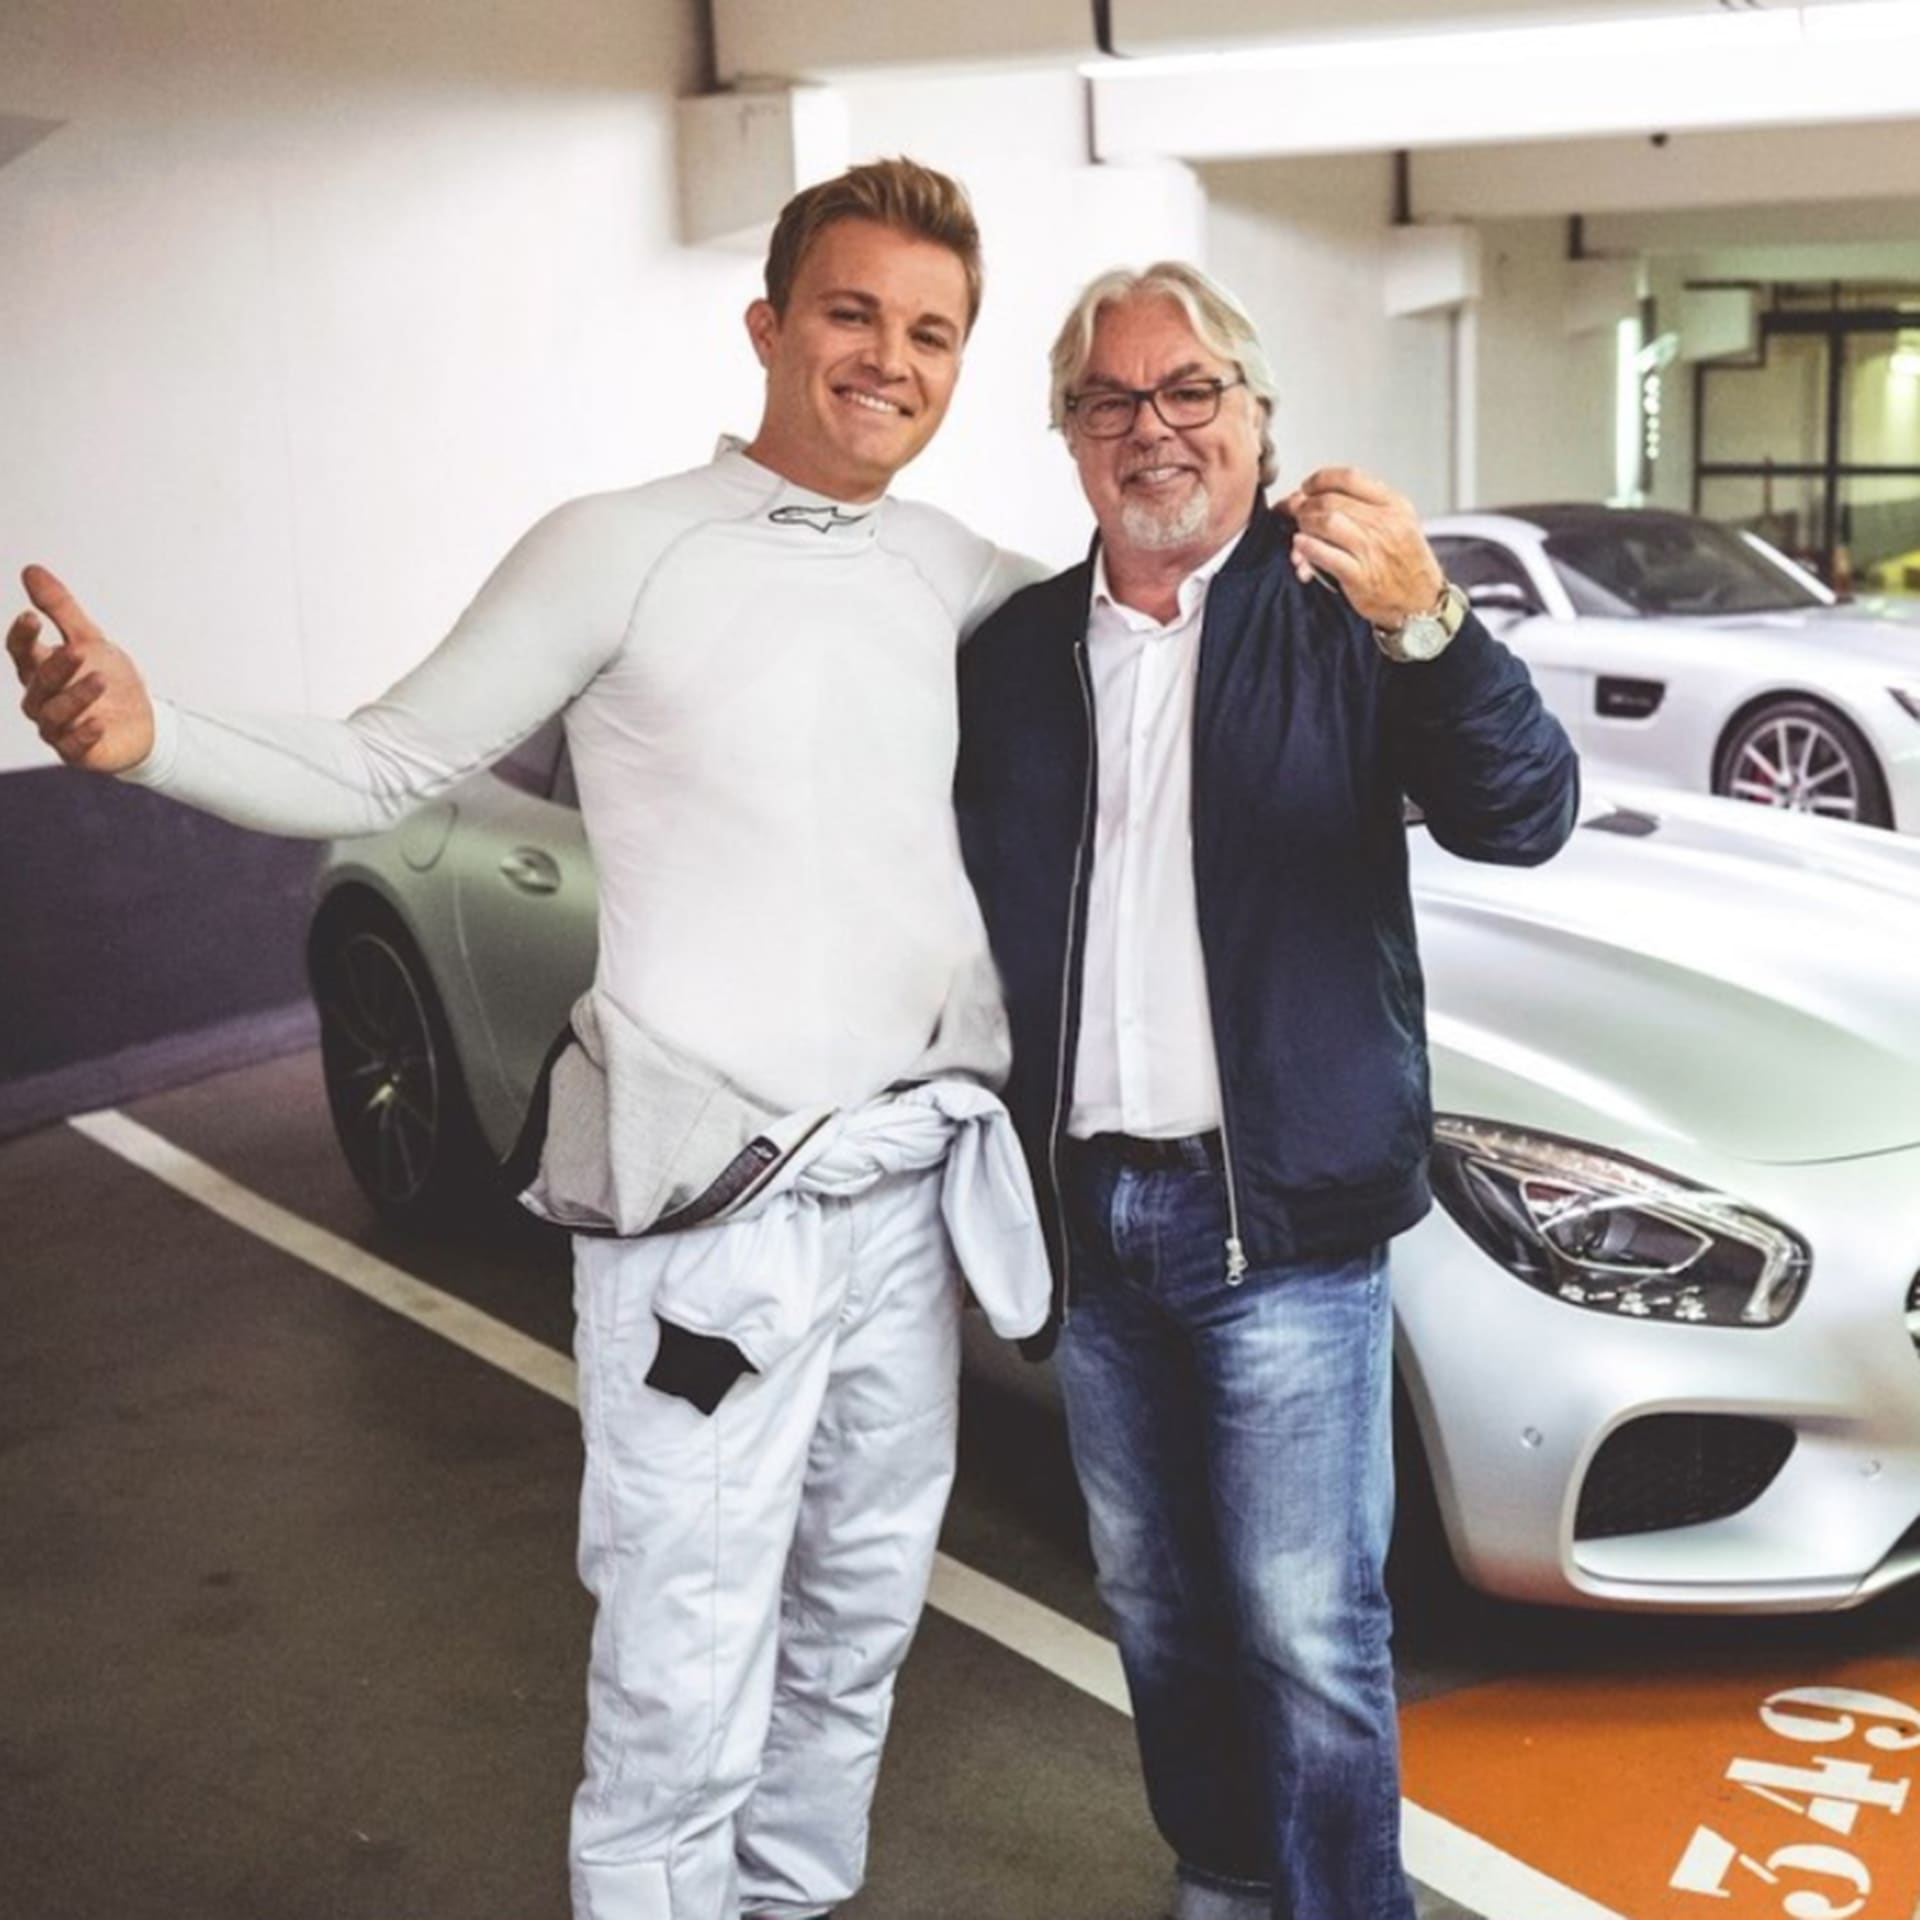 Nico Rosberg v roce 2016 dorovnal svého otce a stal se mistrem světa F1.